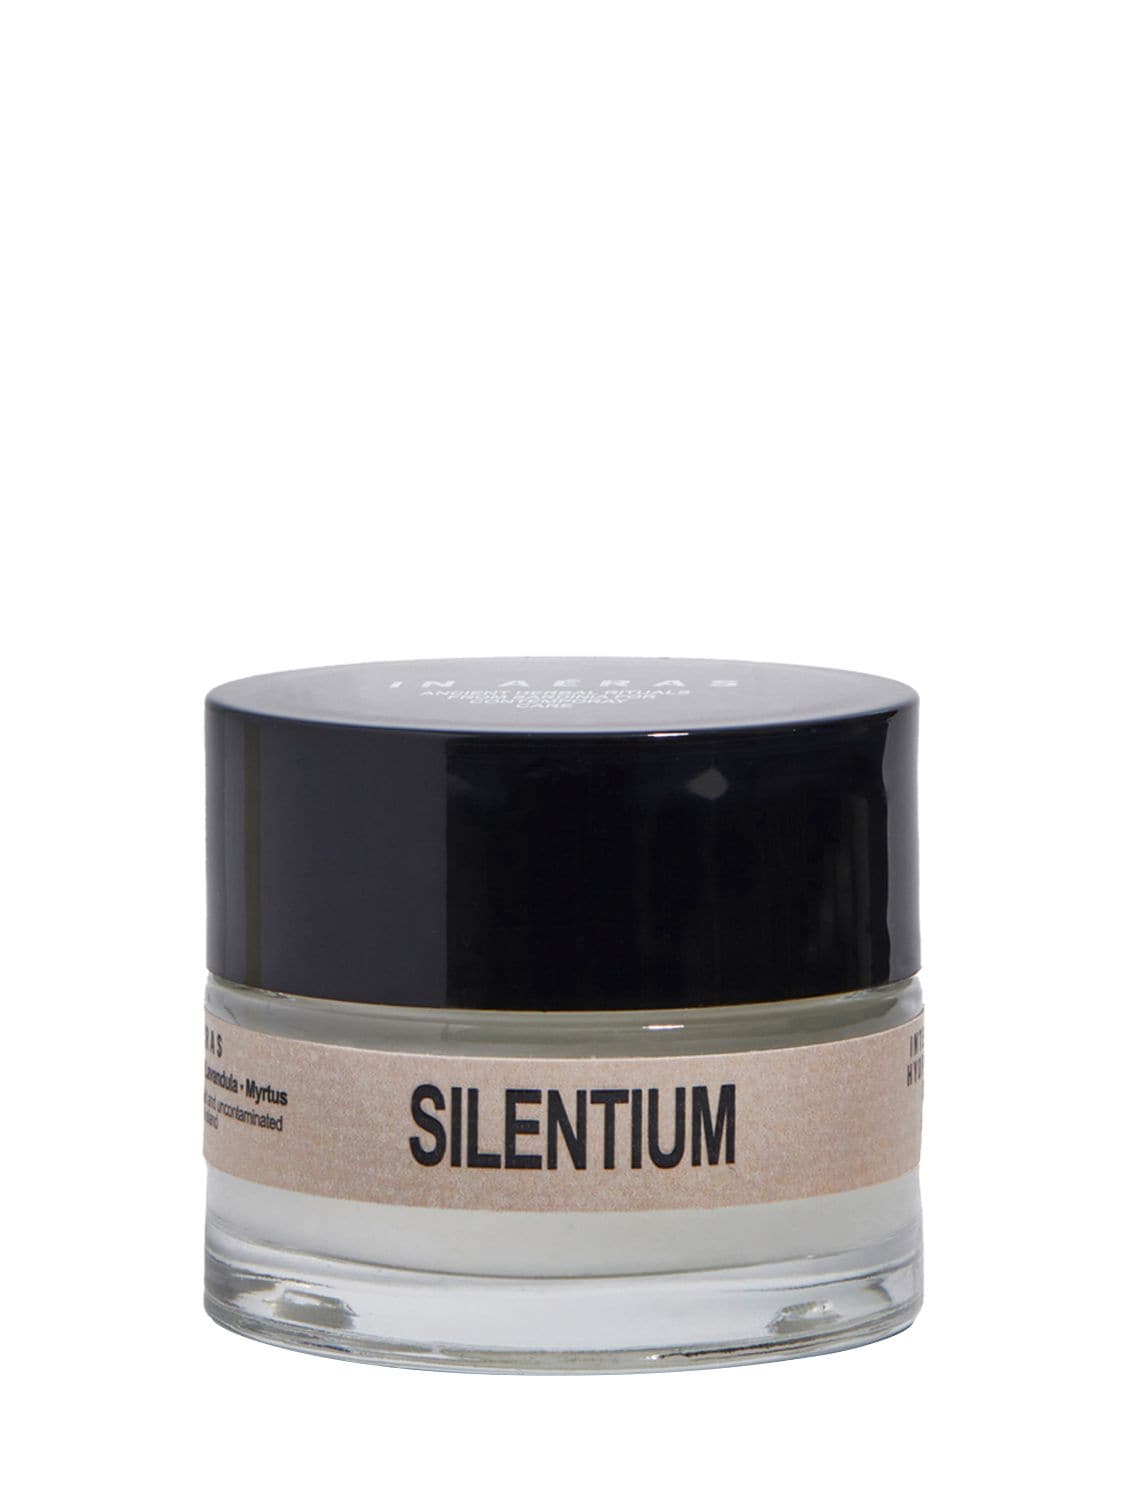 Image of Silentium Intensive Hydrating Face Cream